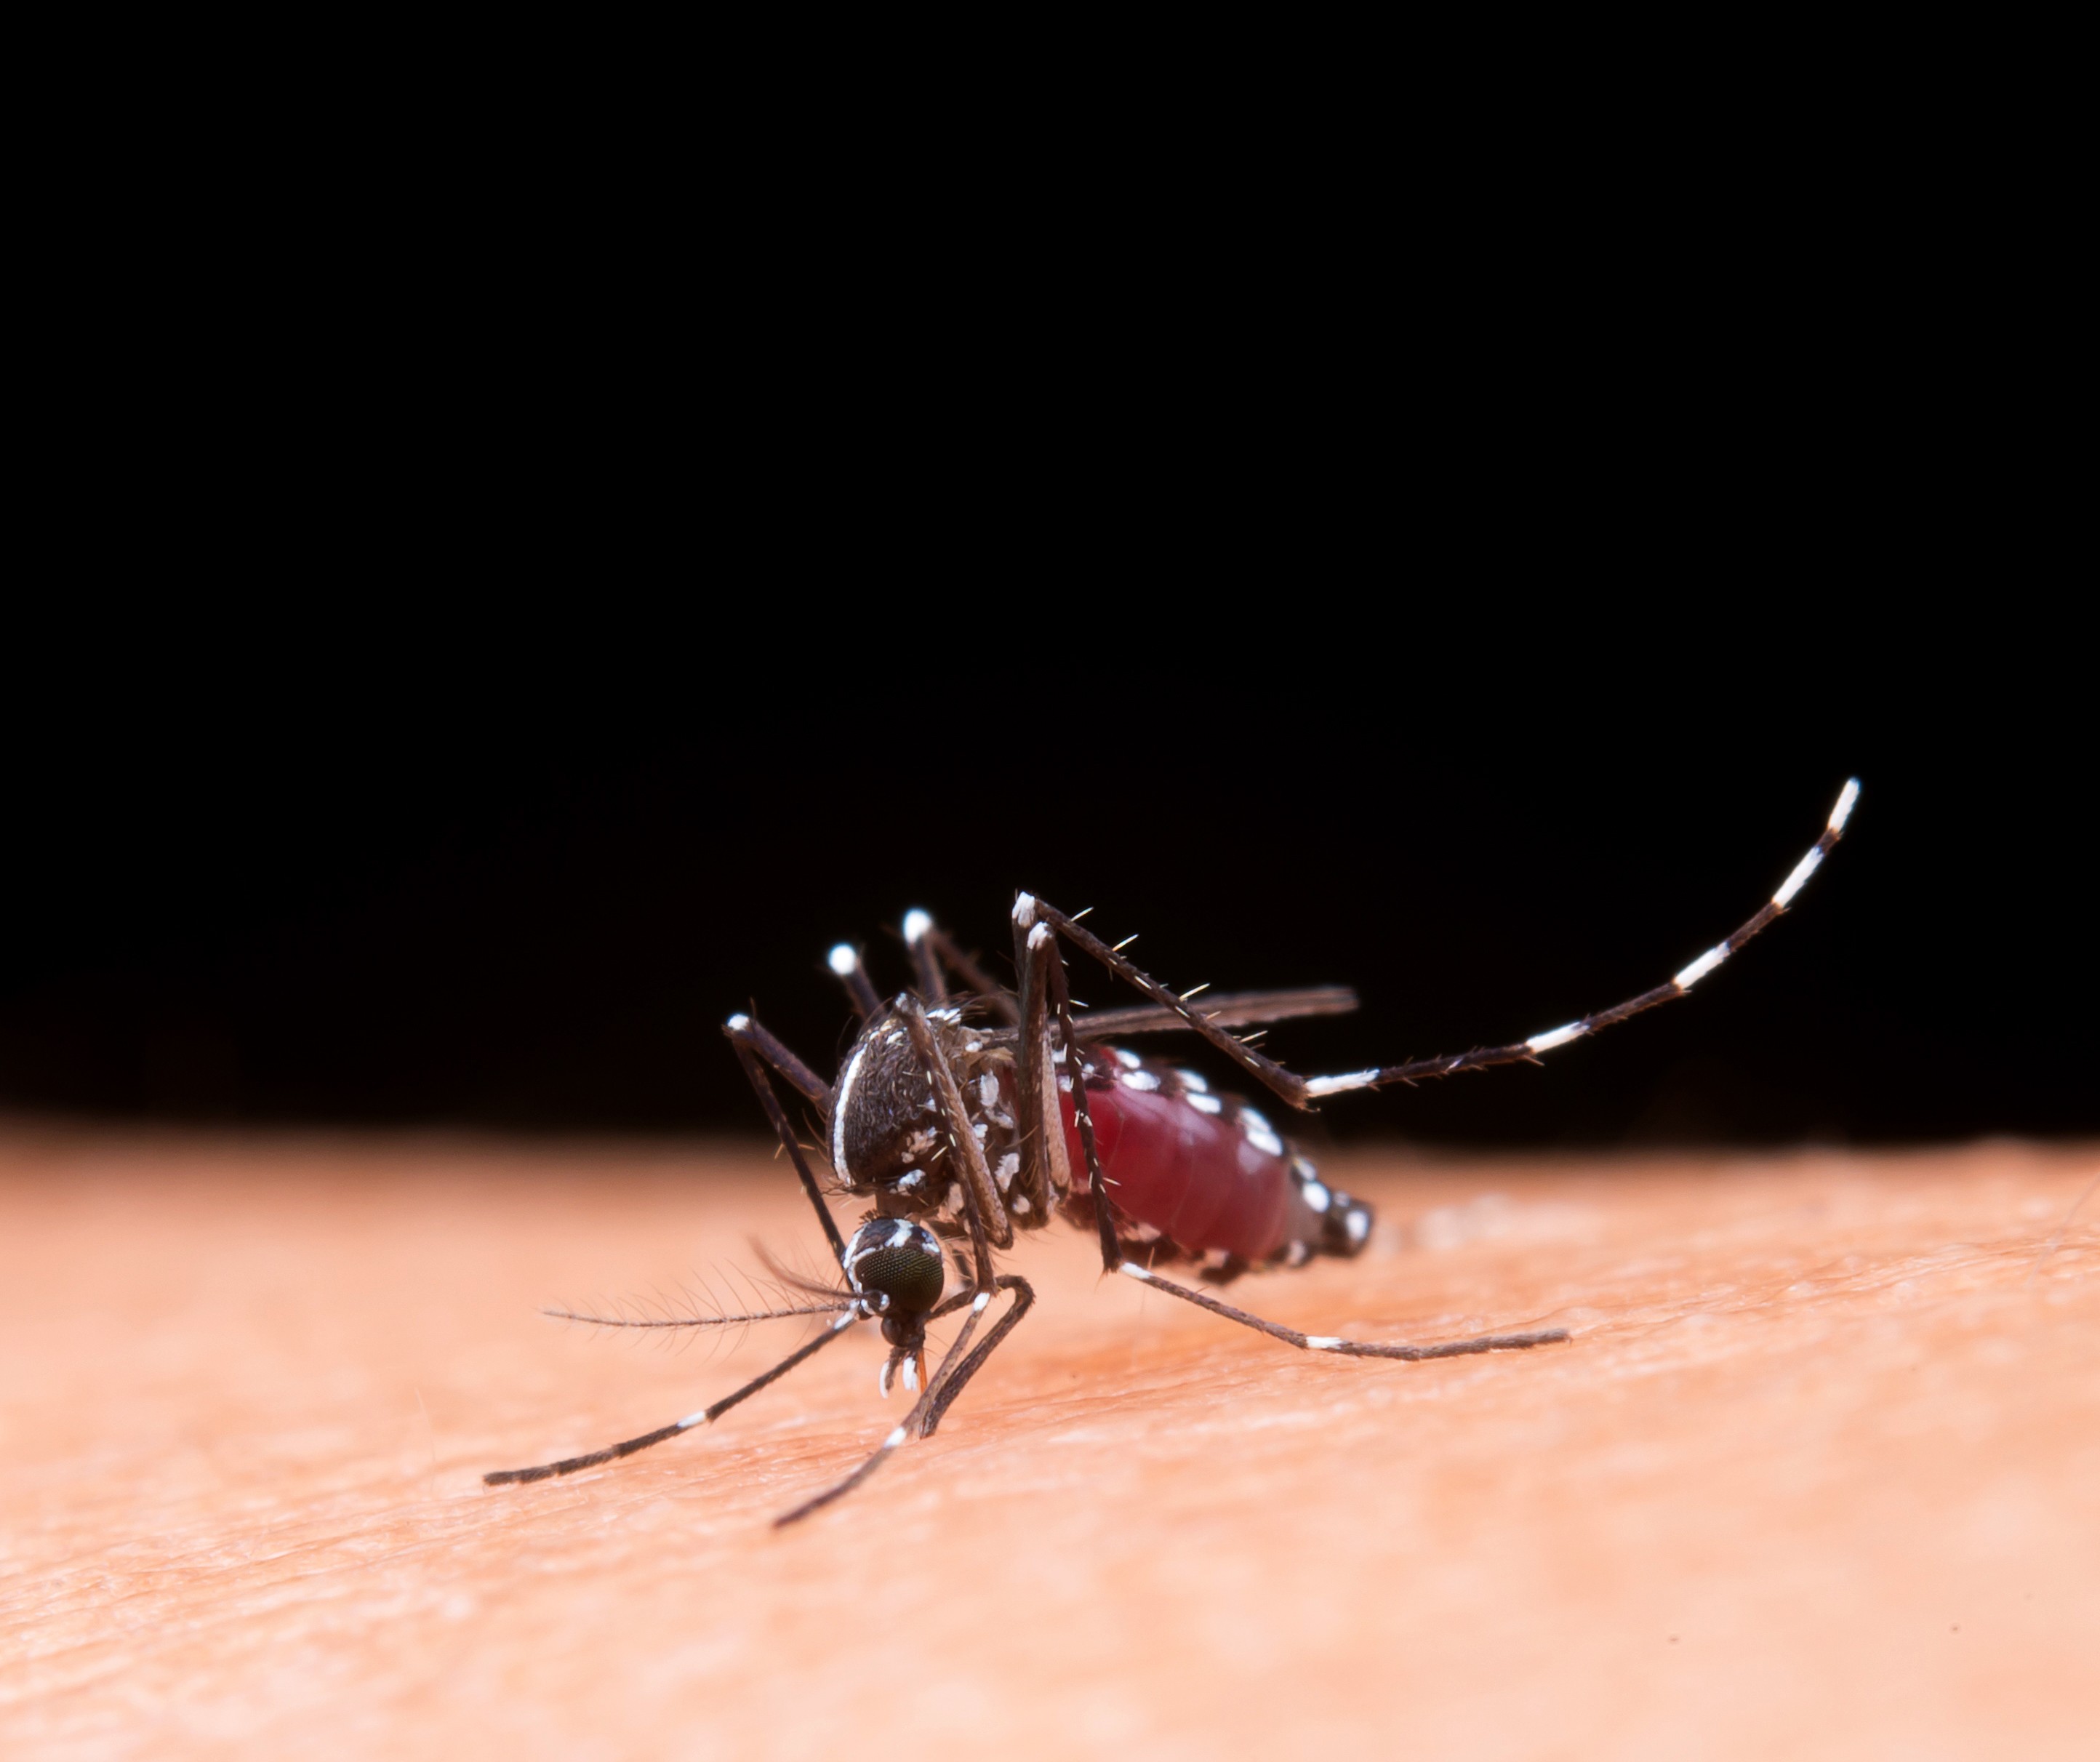 Homem morre com suspeita de dengue grave e caso é investigado em Machadinho D'Oeste, RO